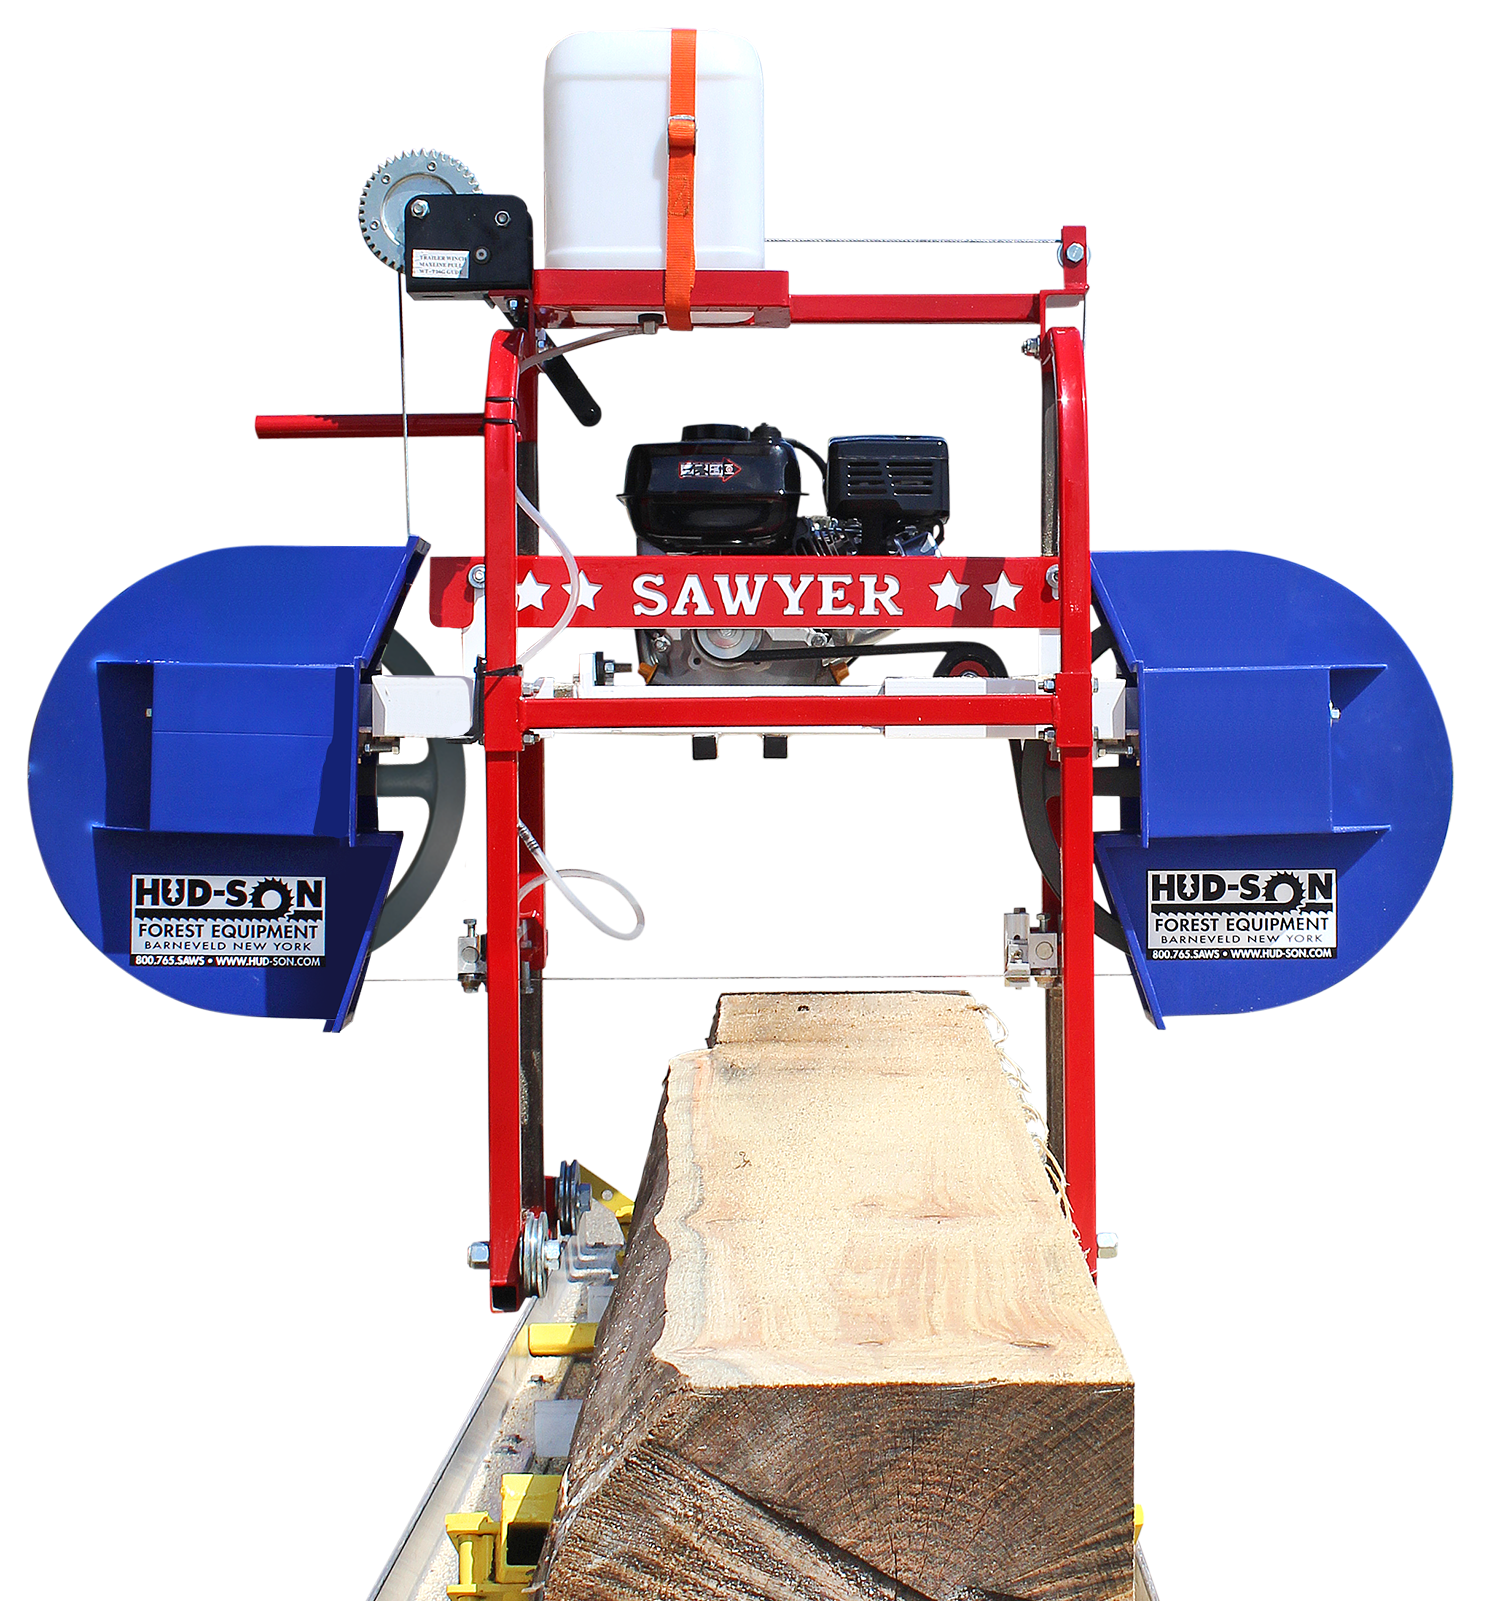 Portable sawmill #1 USA Hud-son Sawyer